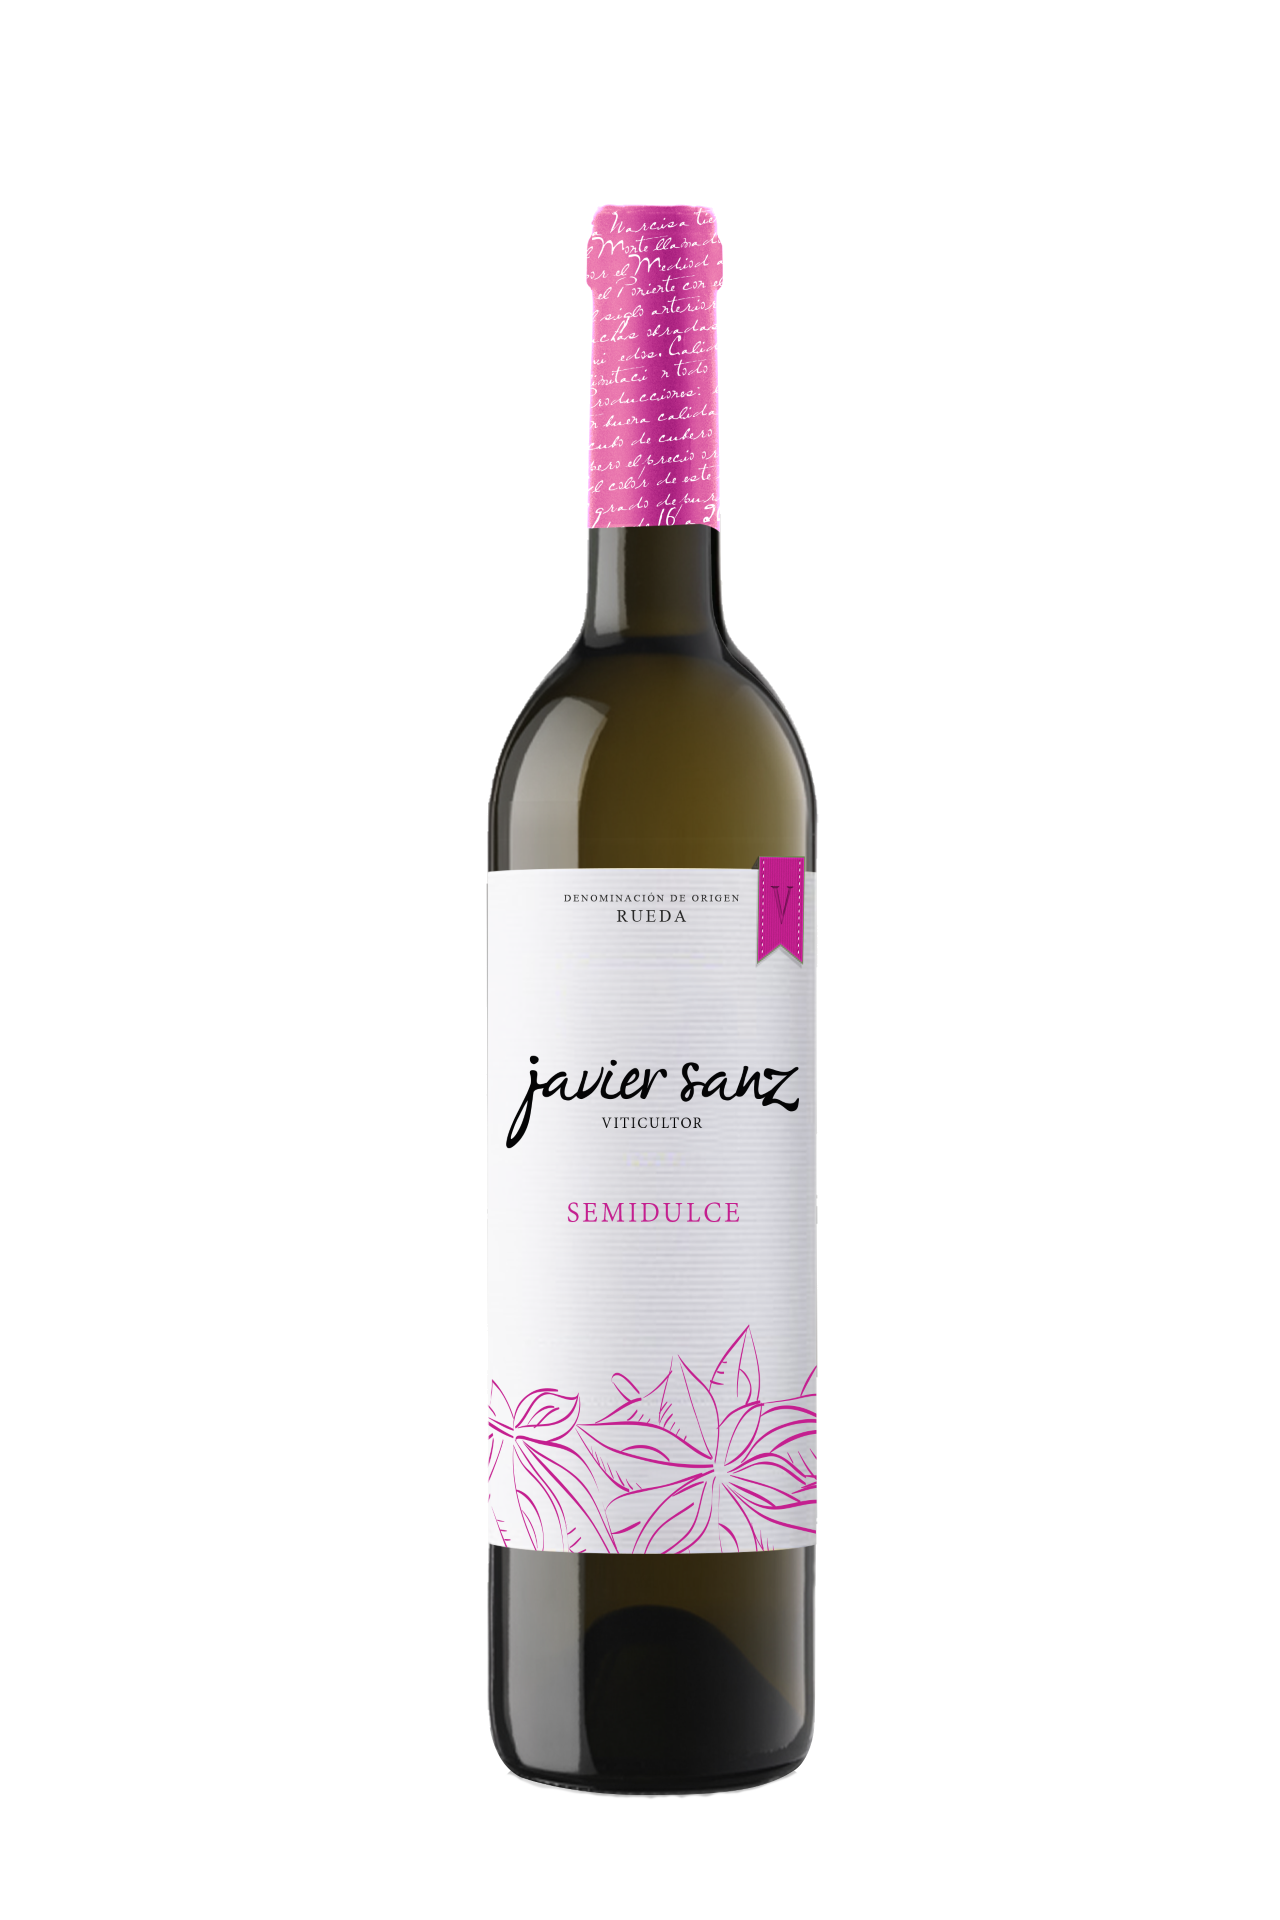 Club de vinos Vino semidulce Javier Sanz Wine to you